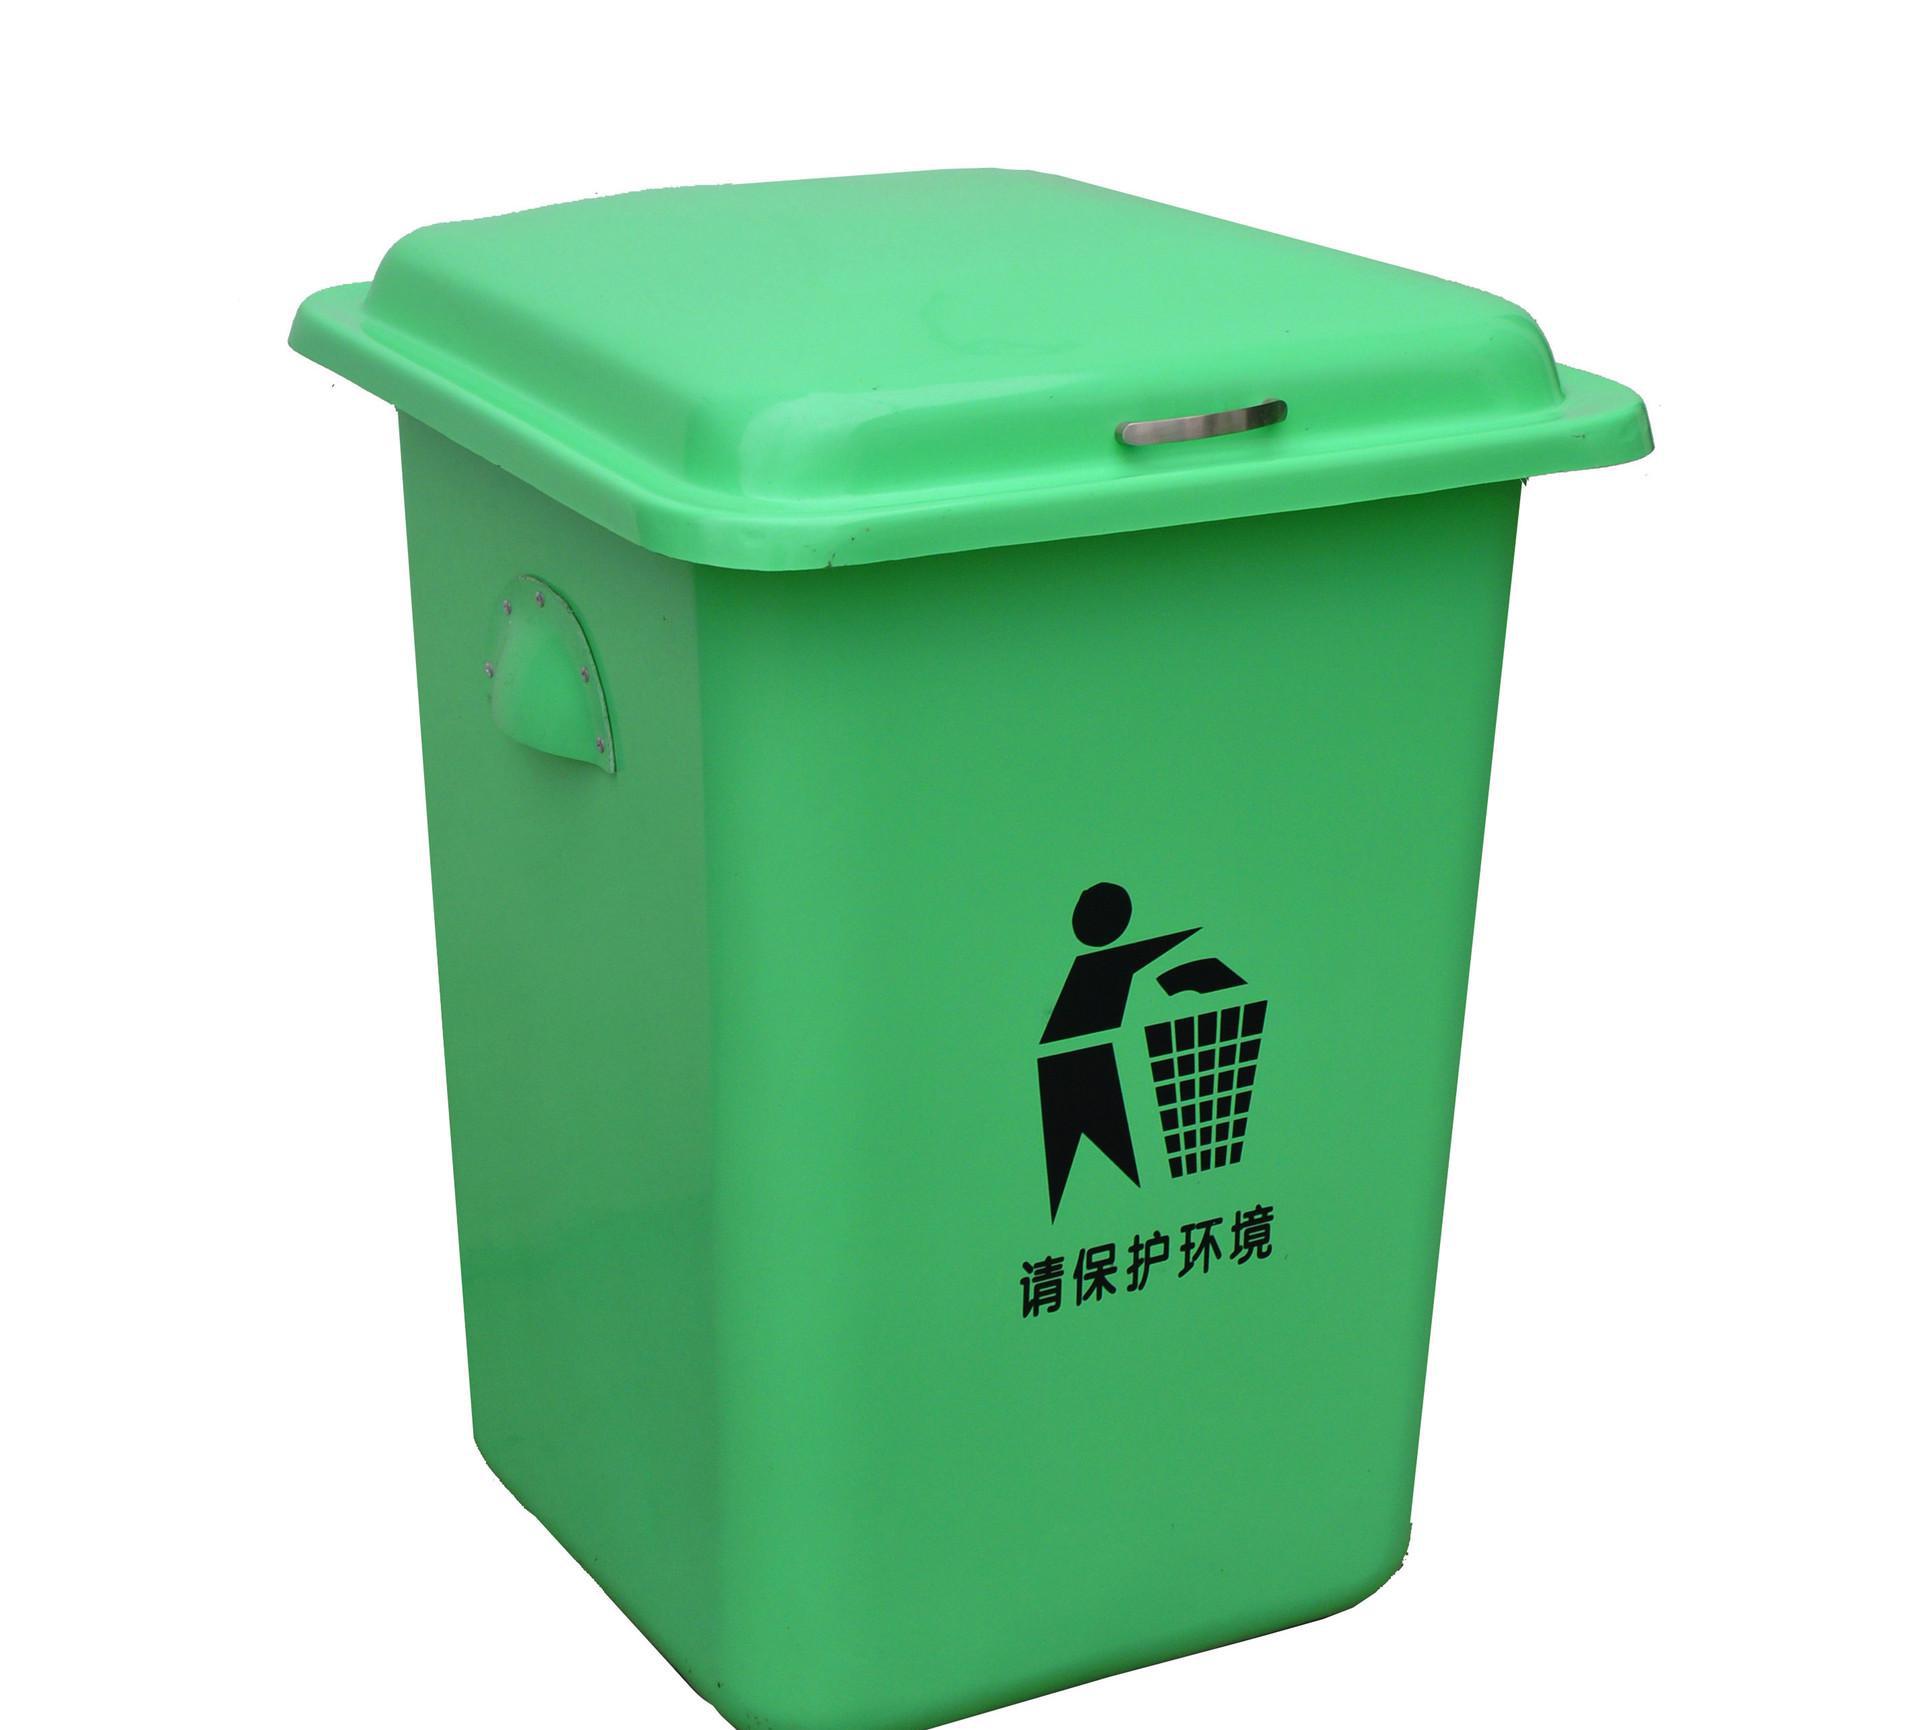 垃圾桶(盛放垃圾、廢棄物的容器)